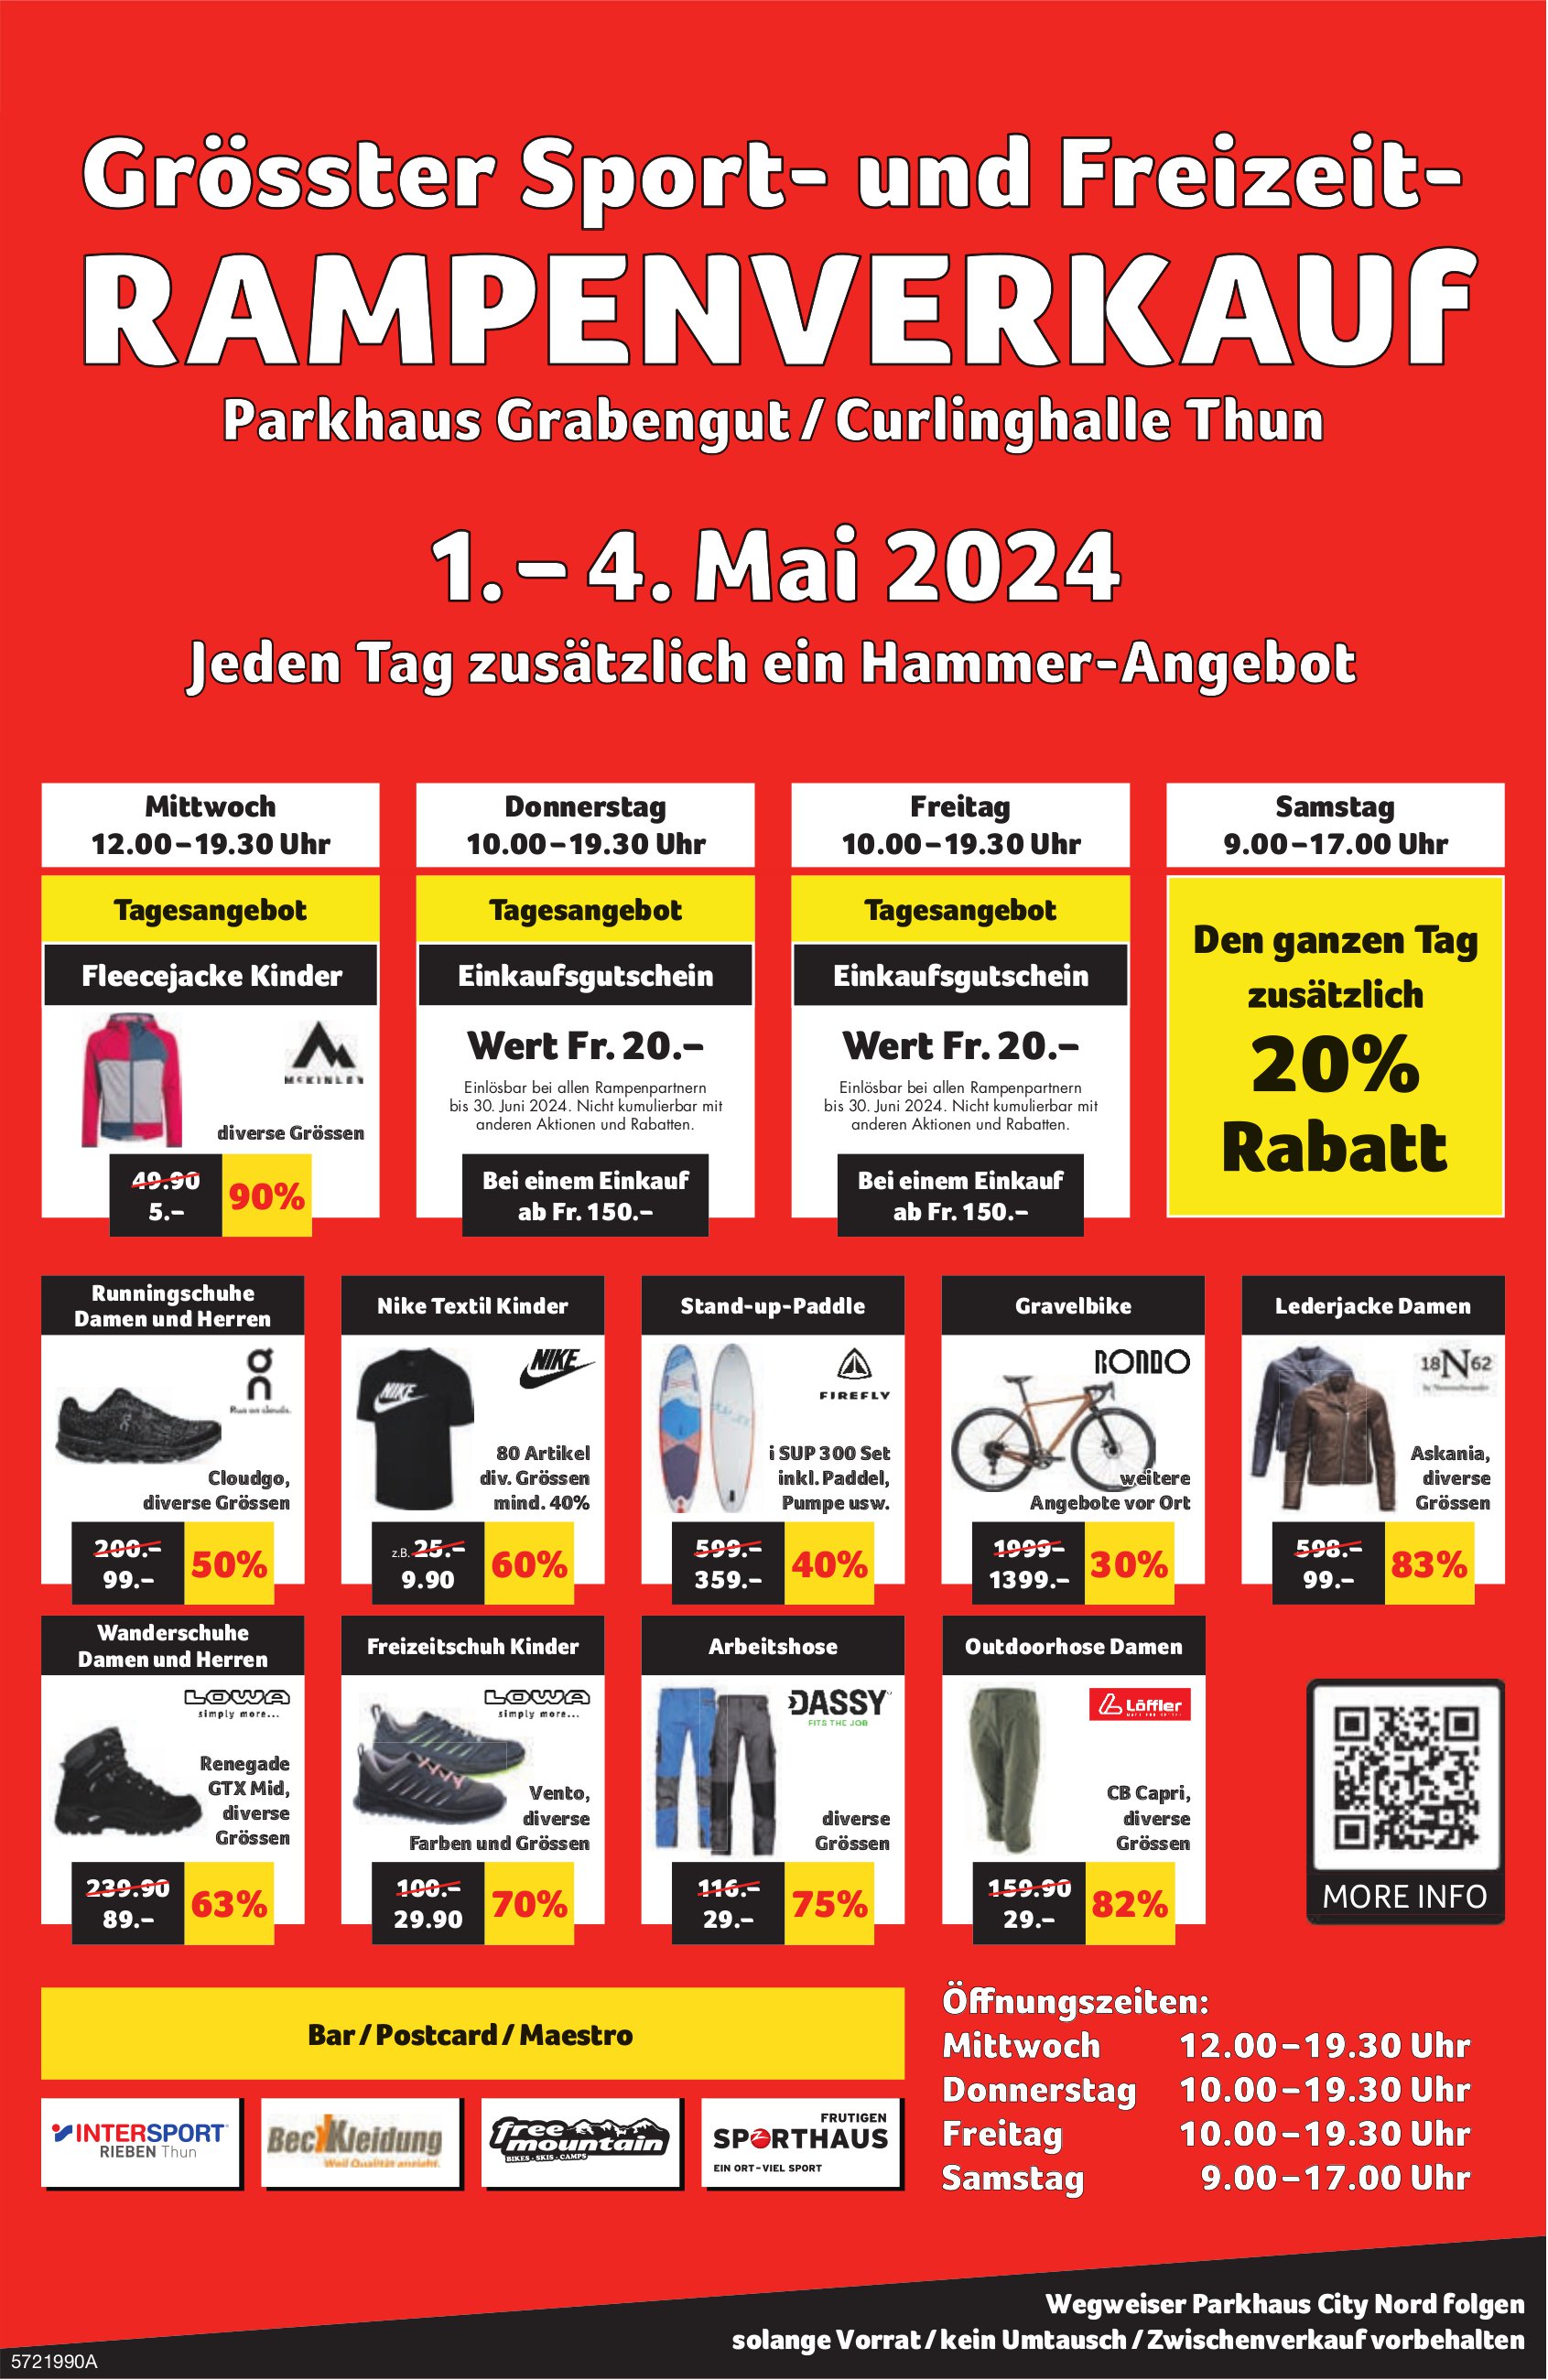 Grösster Sport- und Freizeit-Rampenverkauf, 1. - 4. Mai, Parkhaus Grabengut/Curlinghalle, Thun